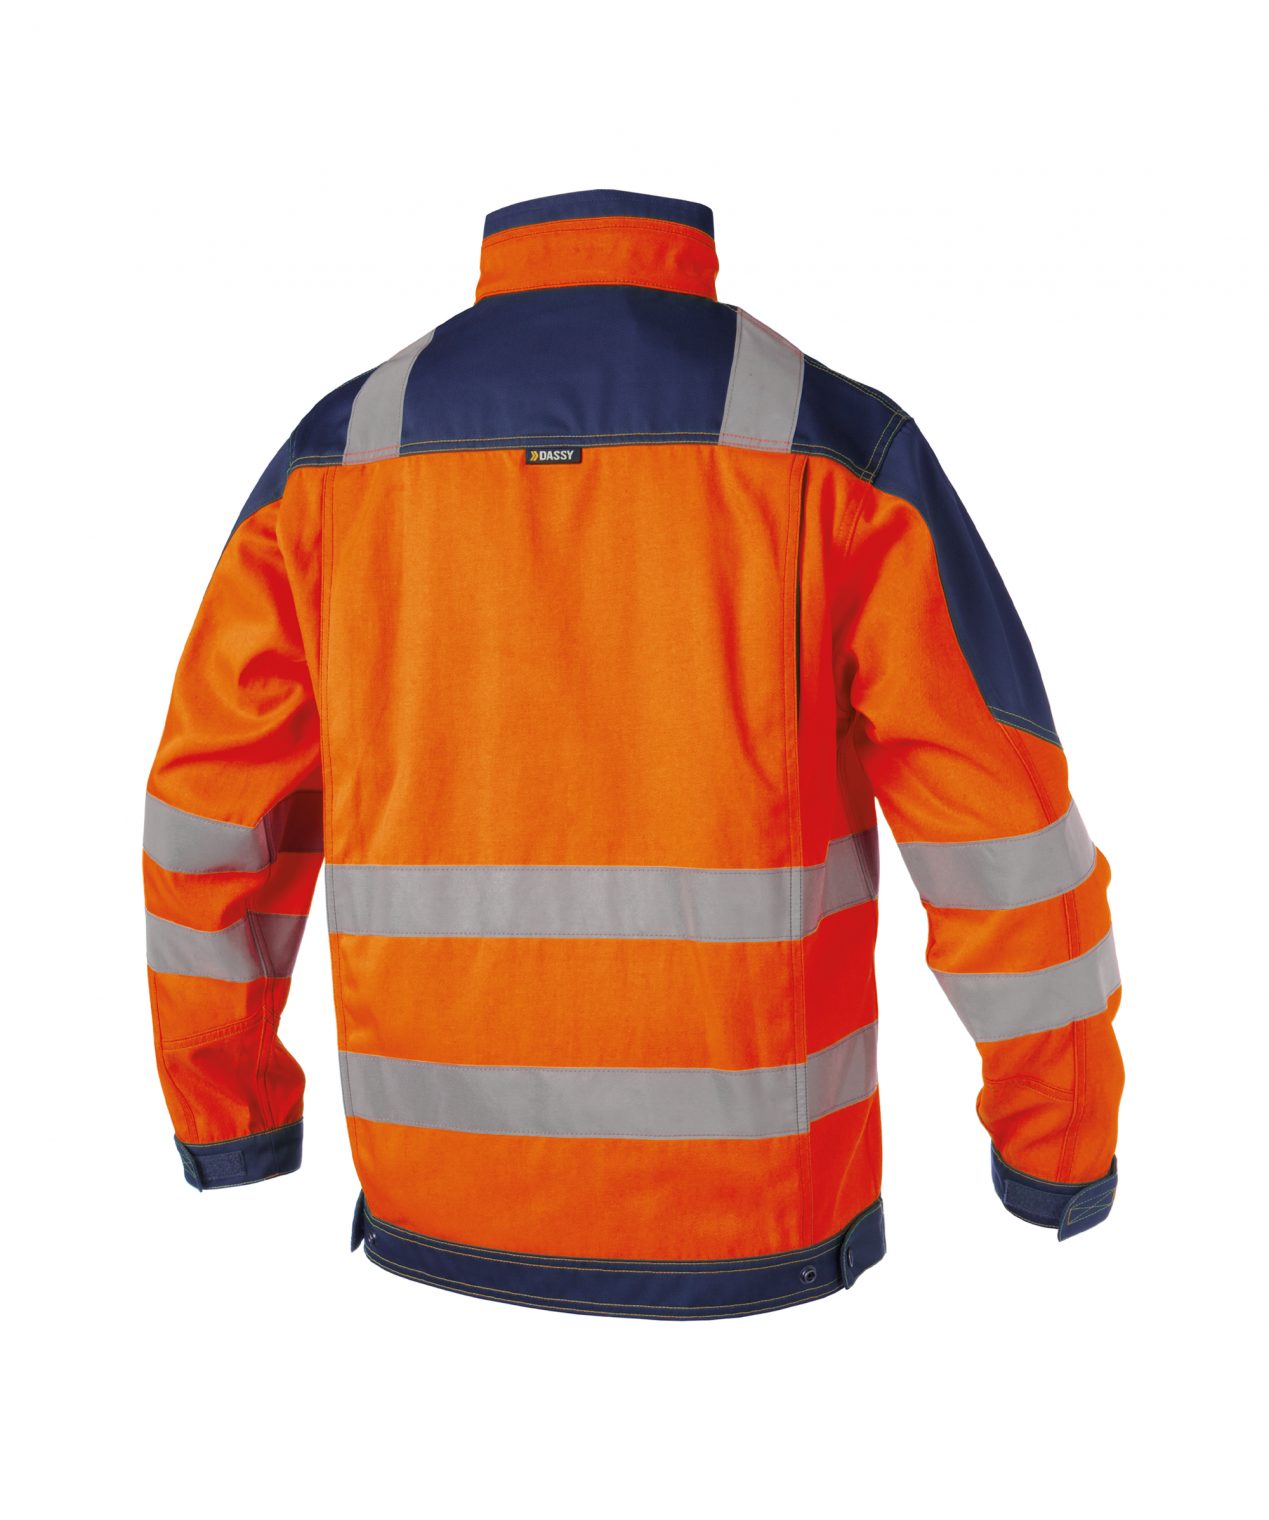 orlando high visibility work jacket fluo orange navy back